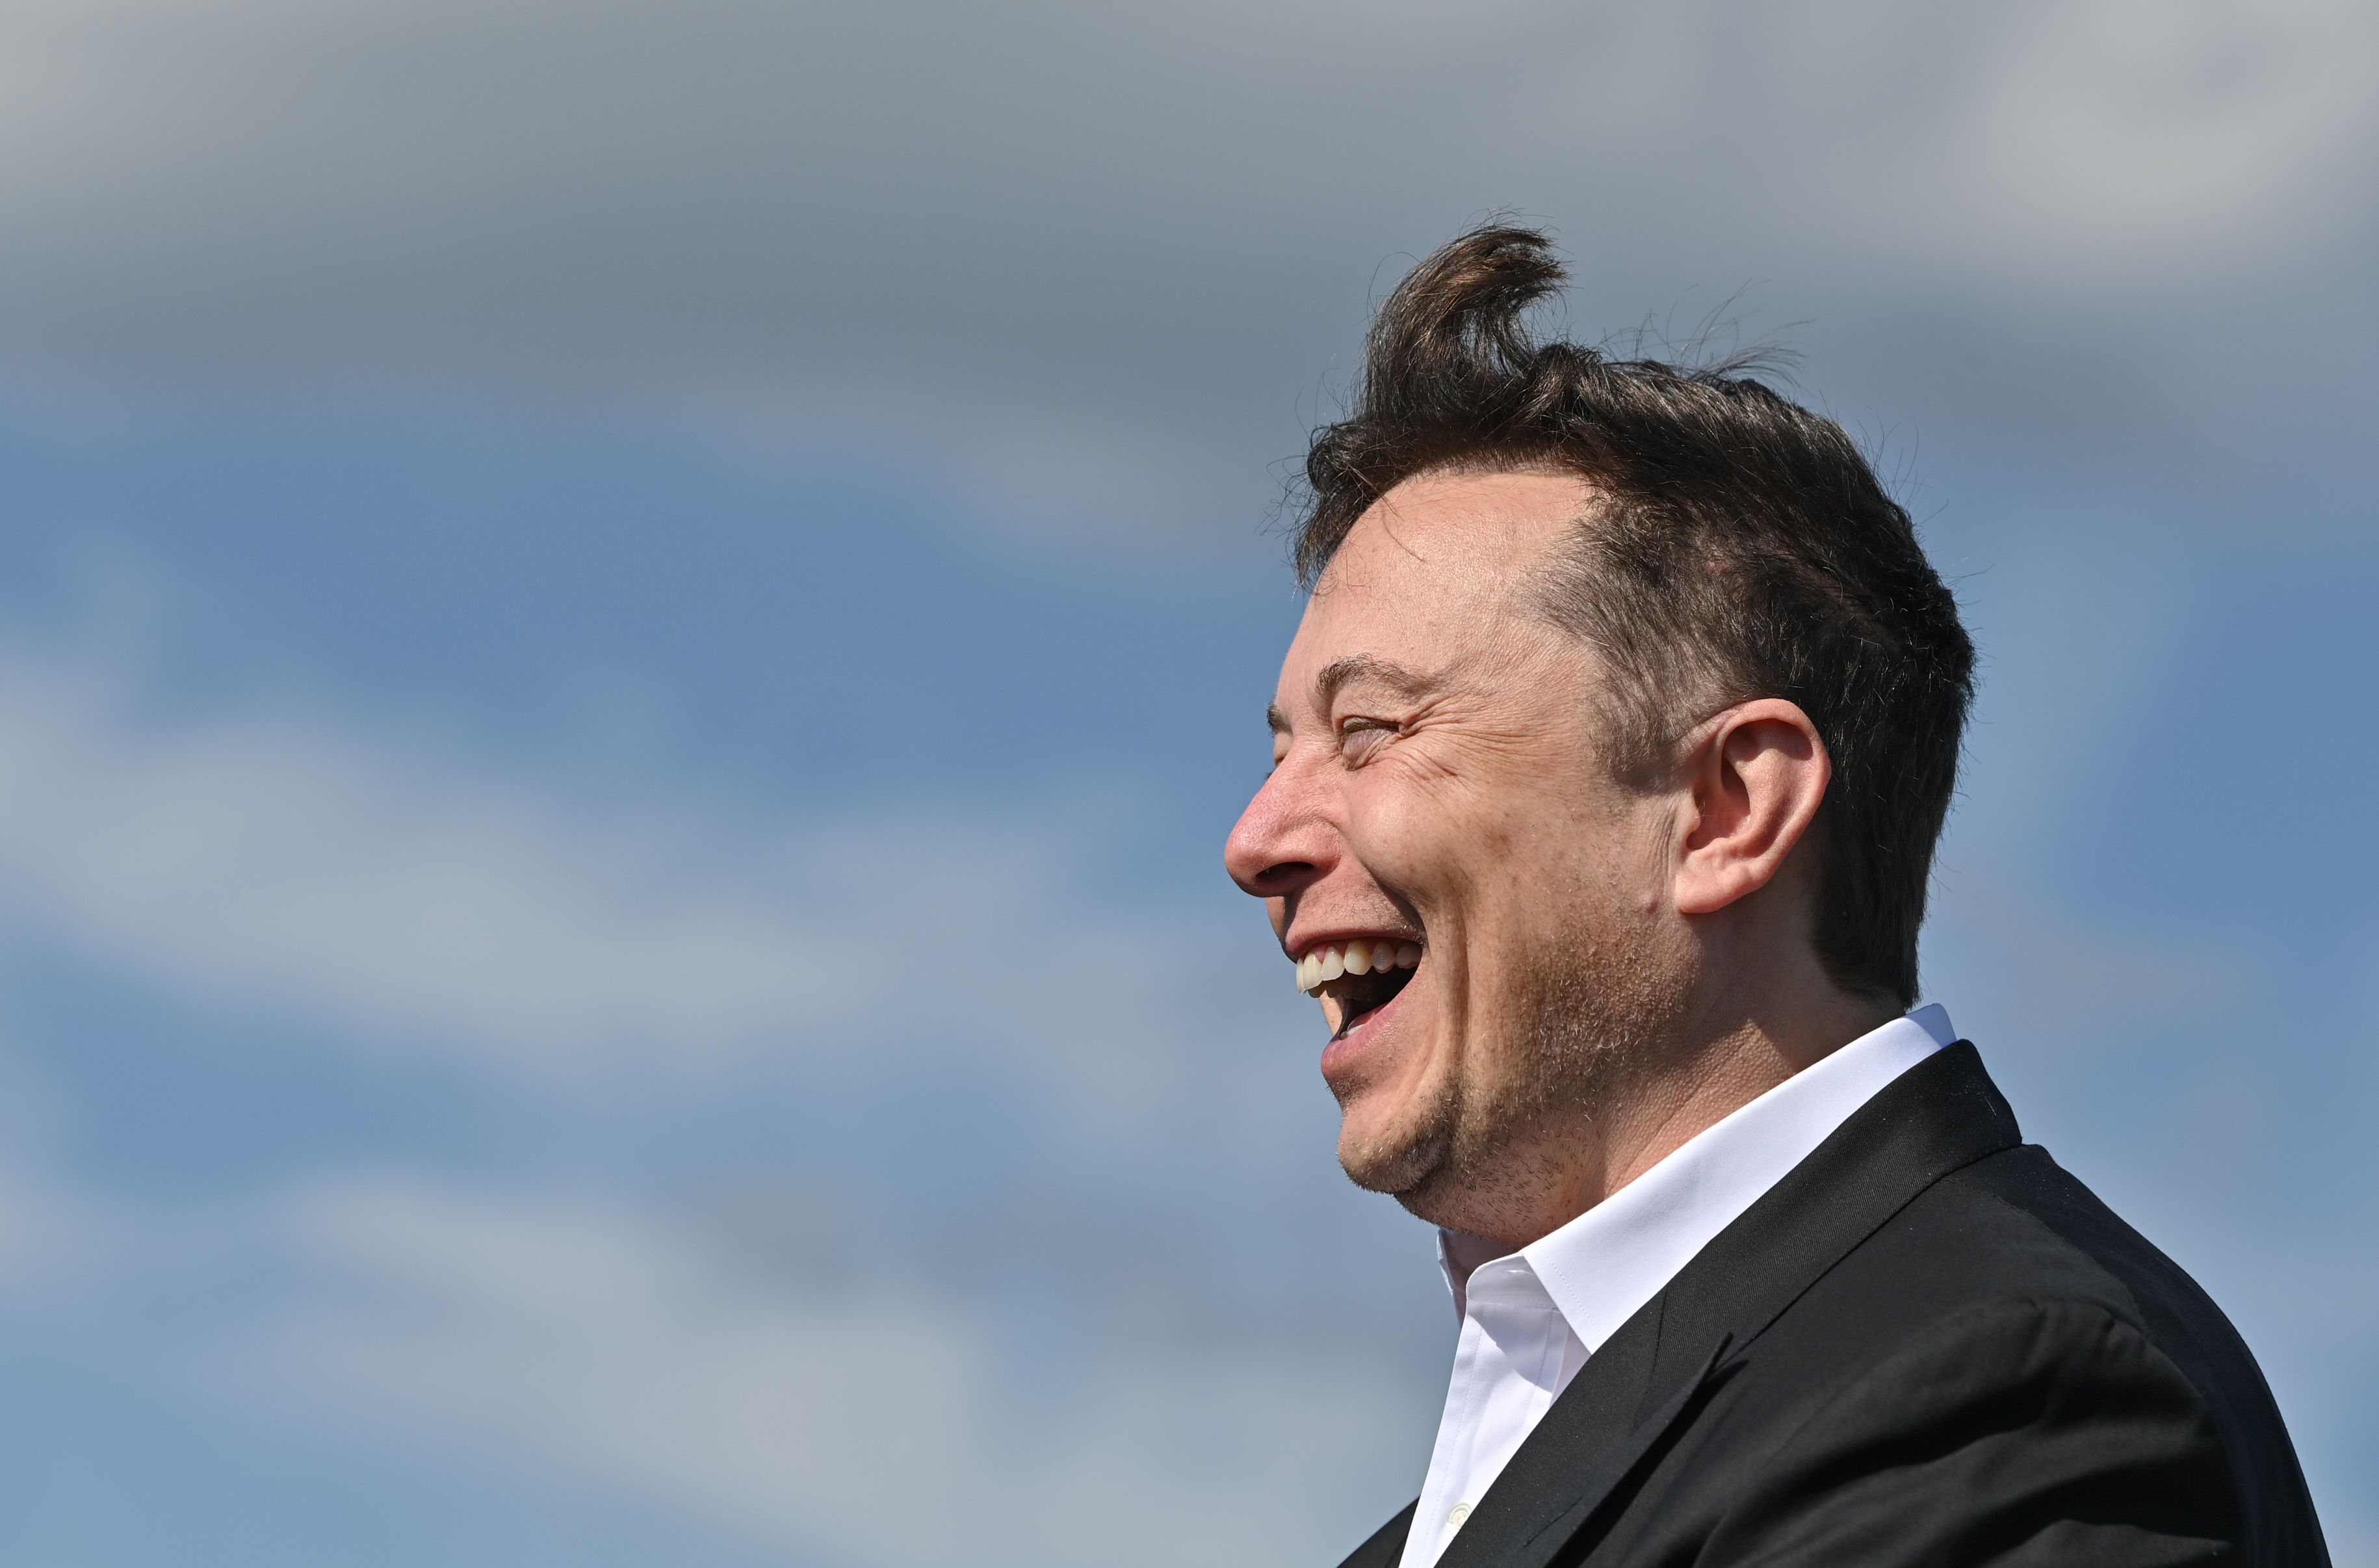 Elon Musk a devenit cel mai bogat om din lume. Averea fondatorului Tesla a crescut fulminant